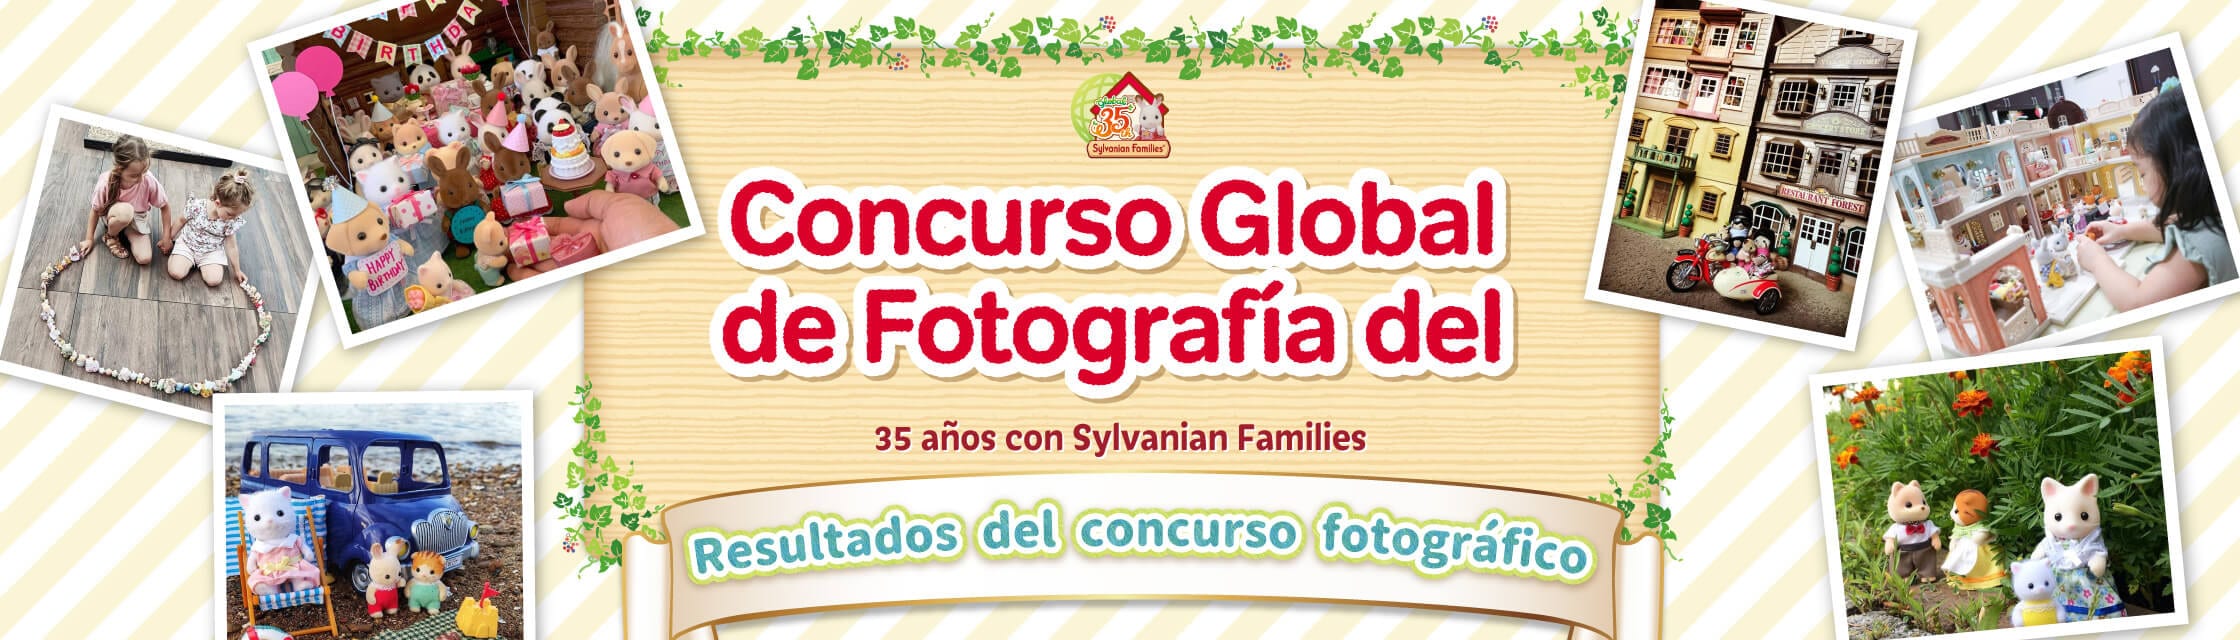 Concurso Global de Fotografía del 35 Aniversario de Sylvanian Families